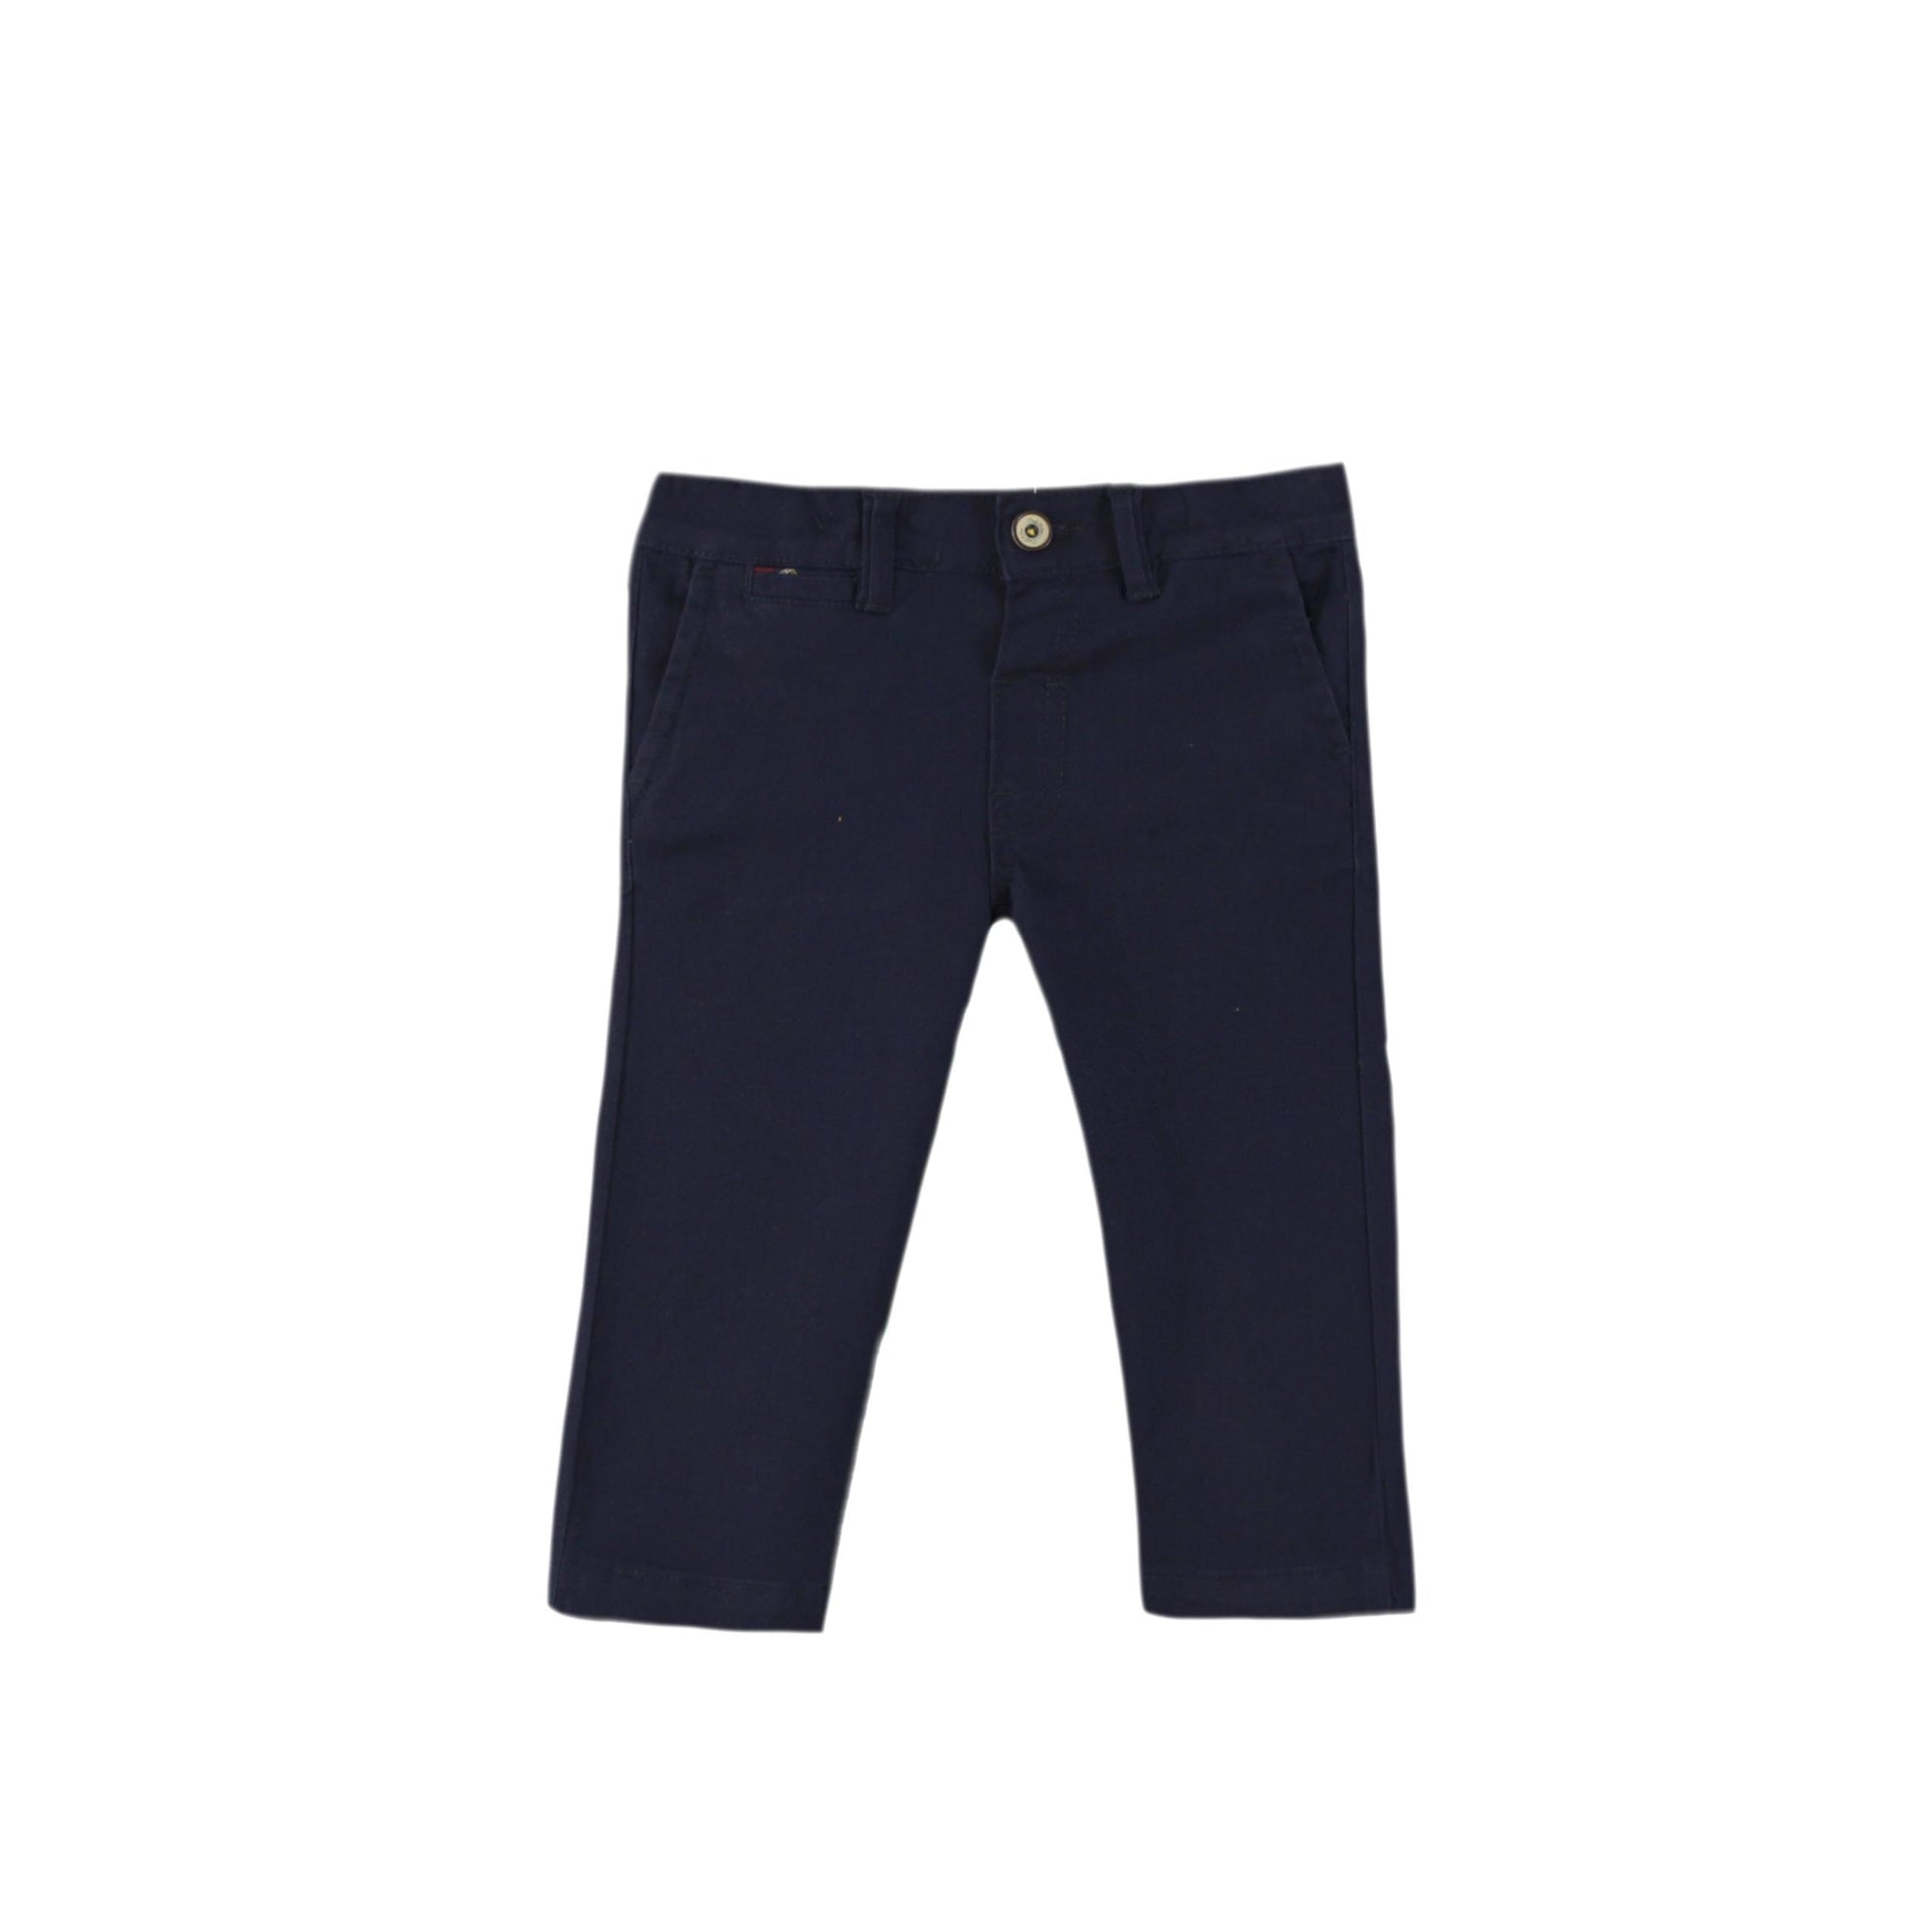 MIRANDA NEL BLU Grey & Navy Baby Boys Trouser Set - 1107